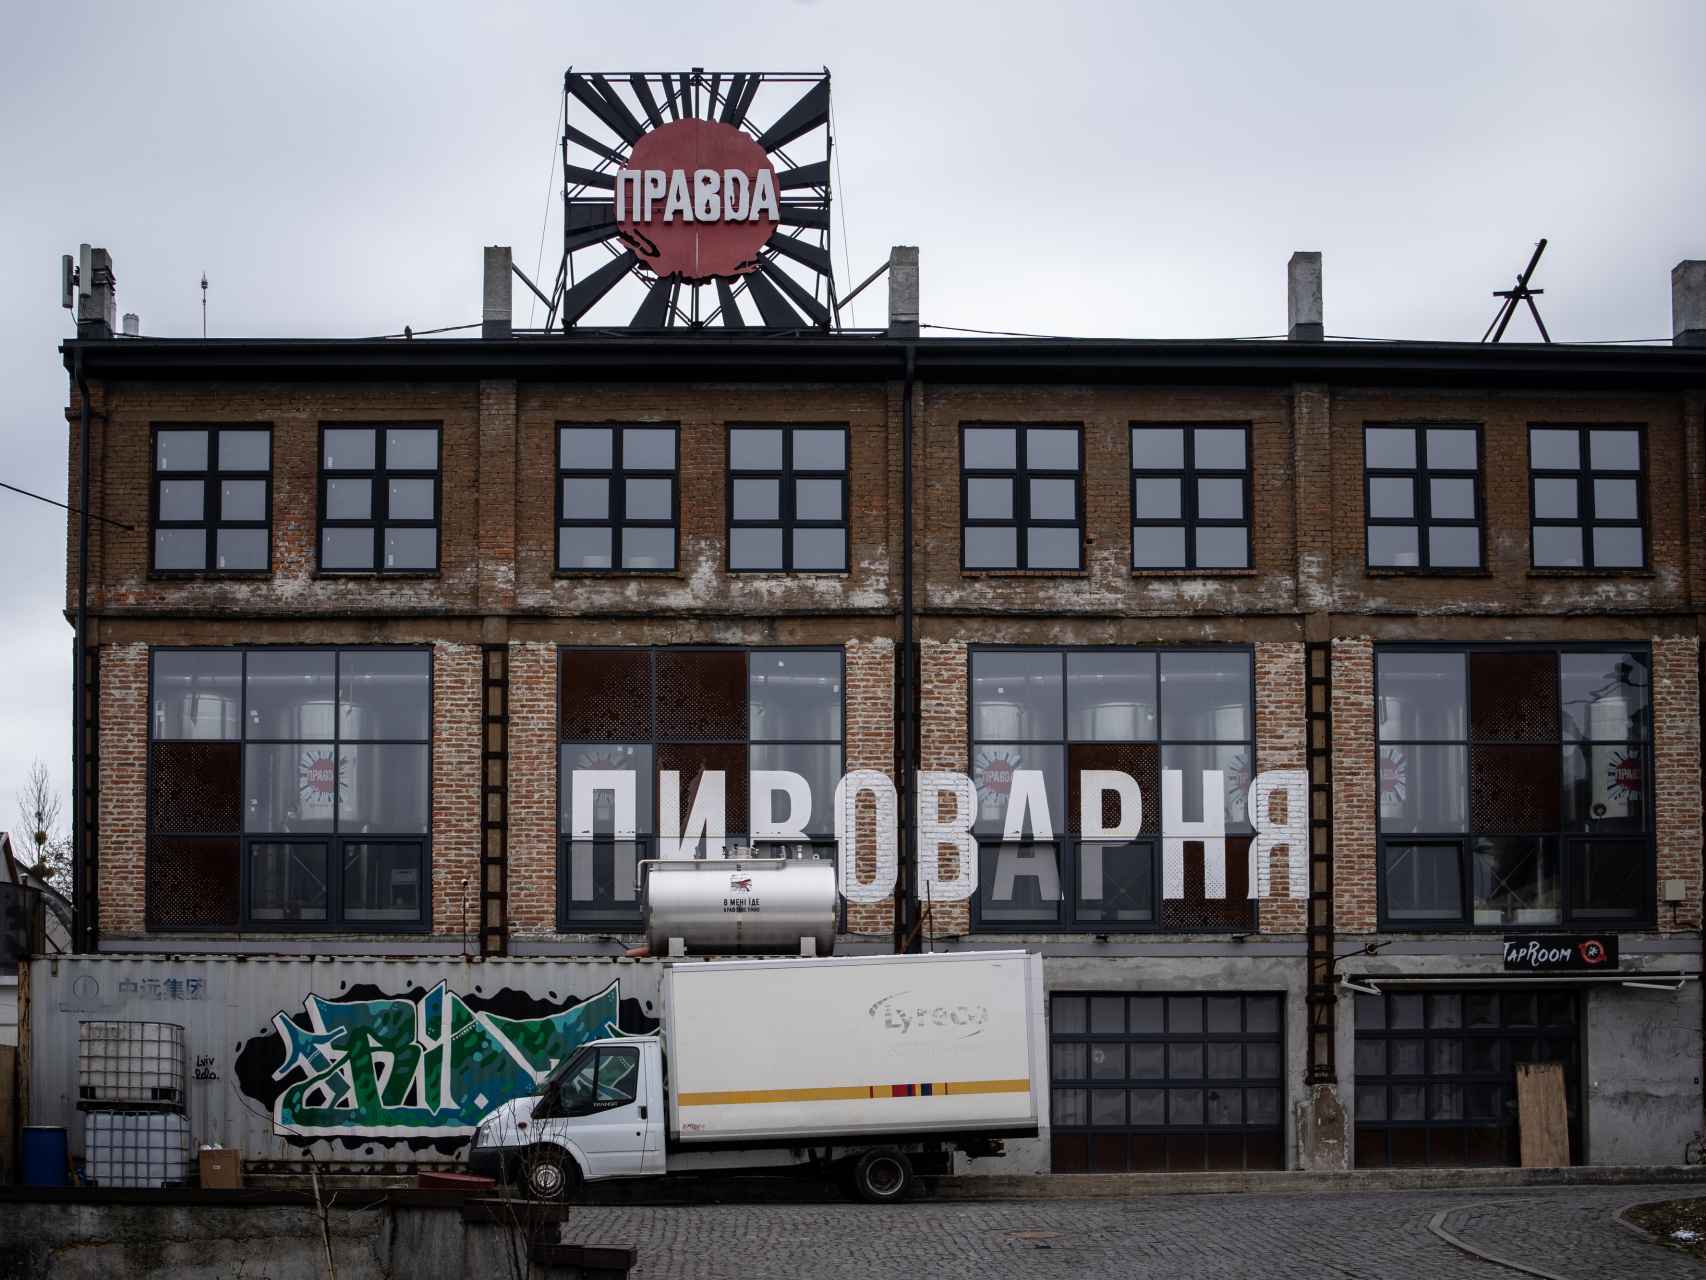 Las sirenas antiaéreas también suenan en las inmediaciones de esta fábrica ubicada en una zona industrial de Lviv.